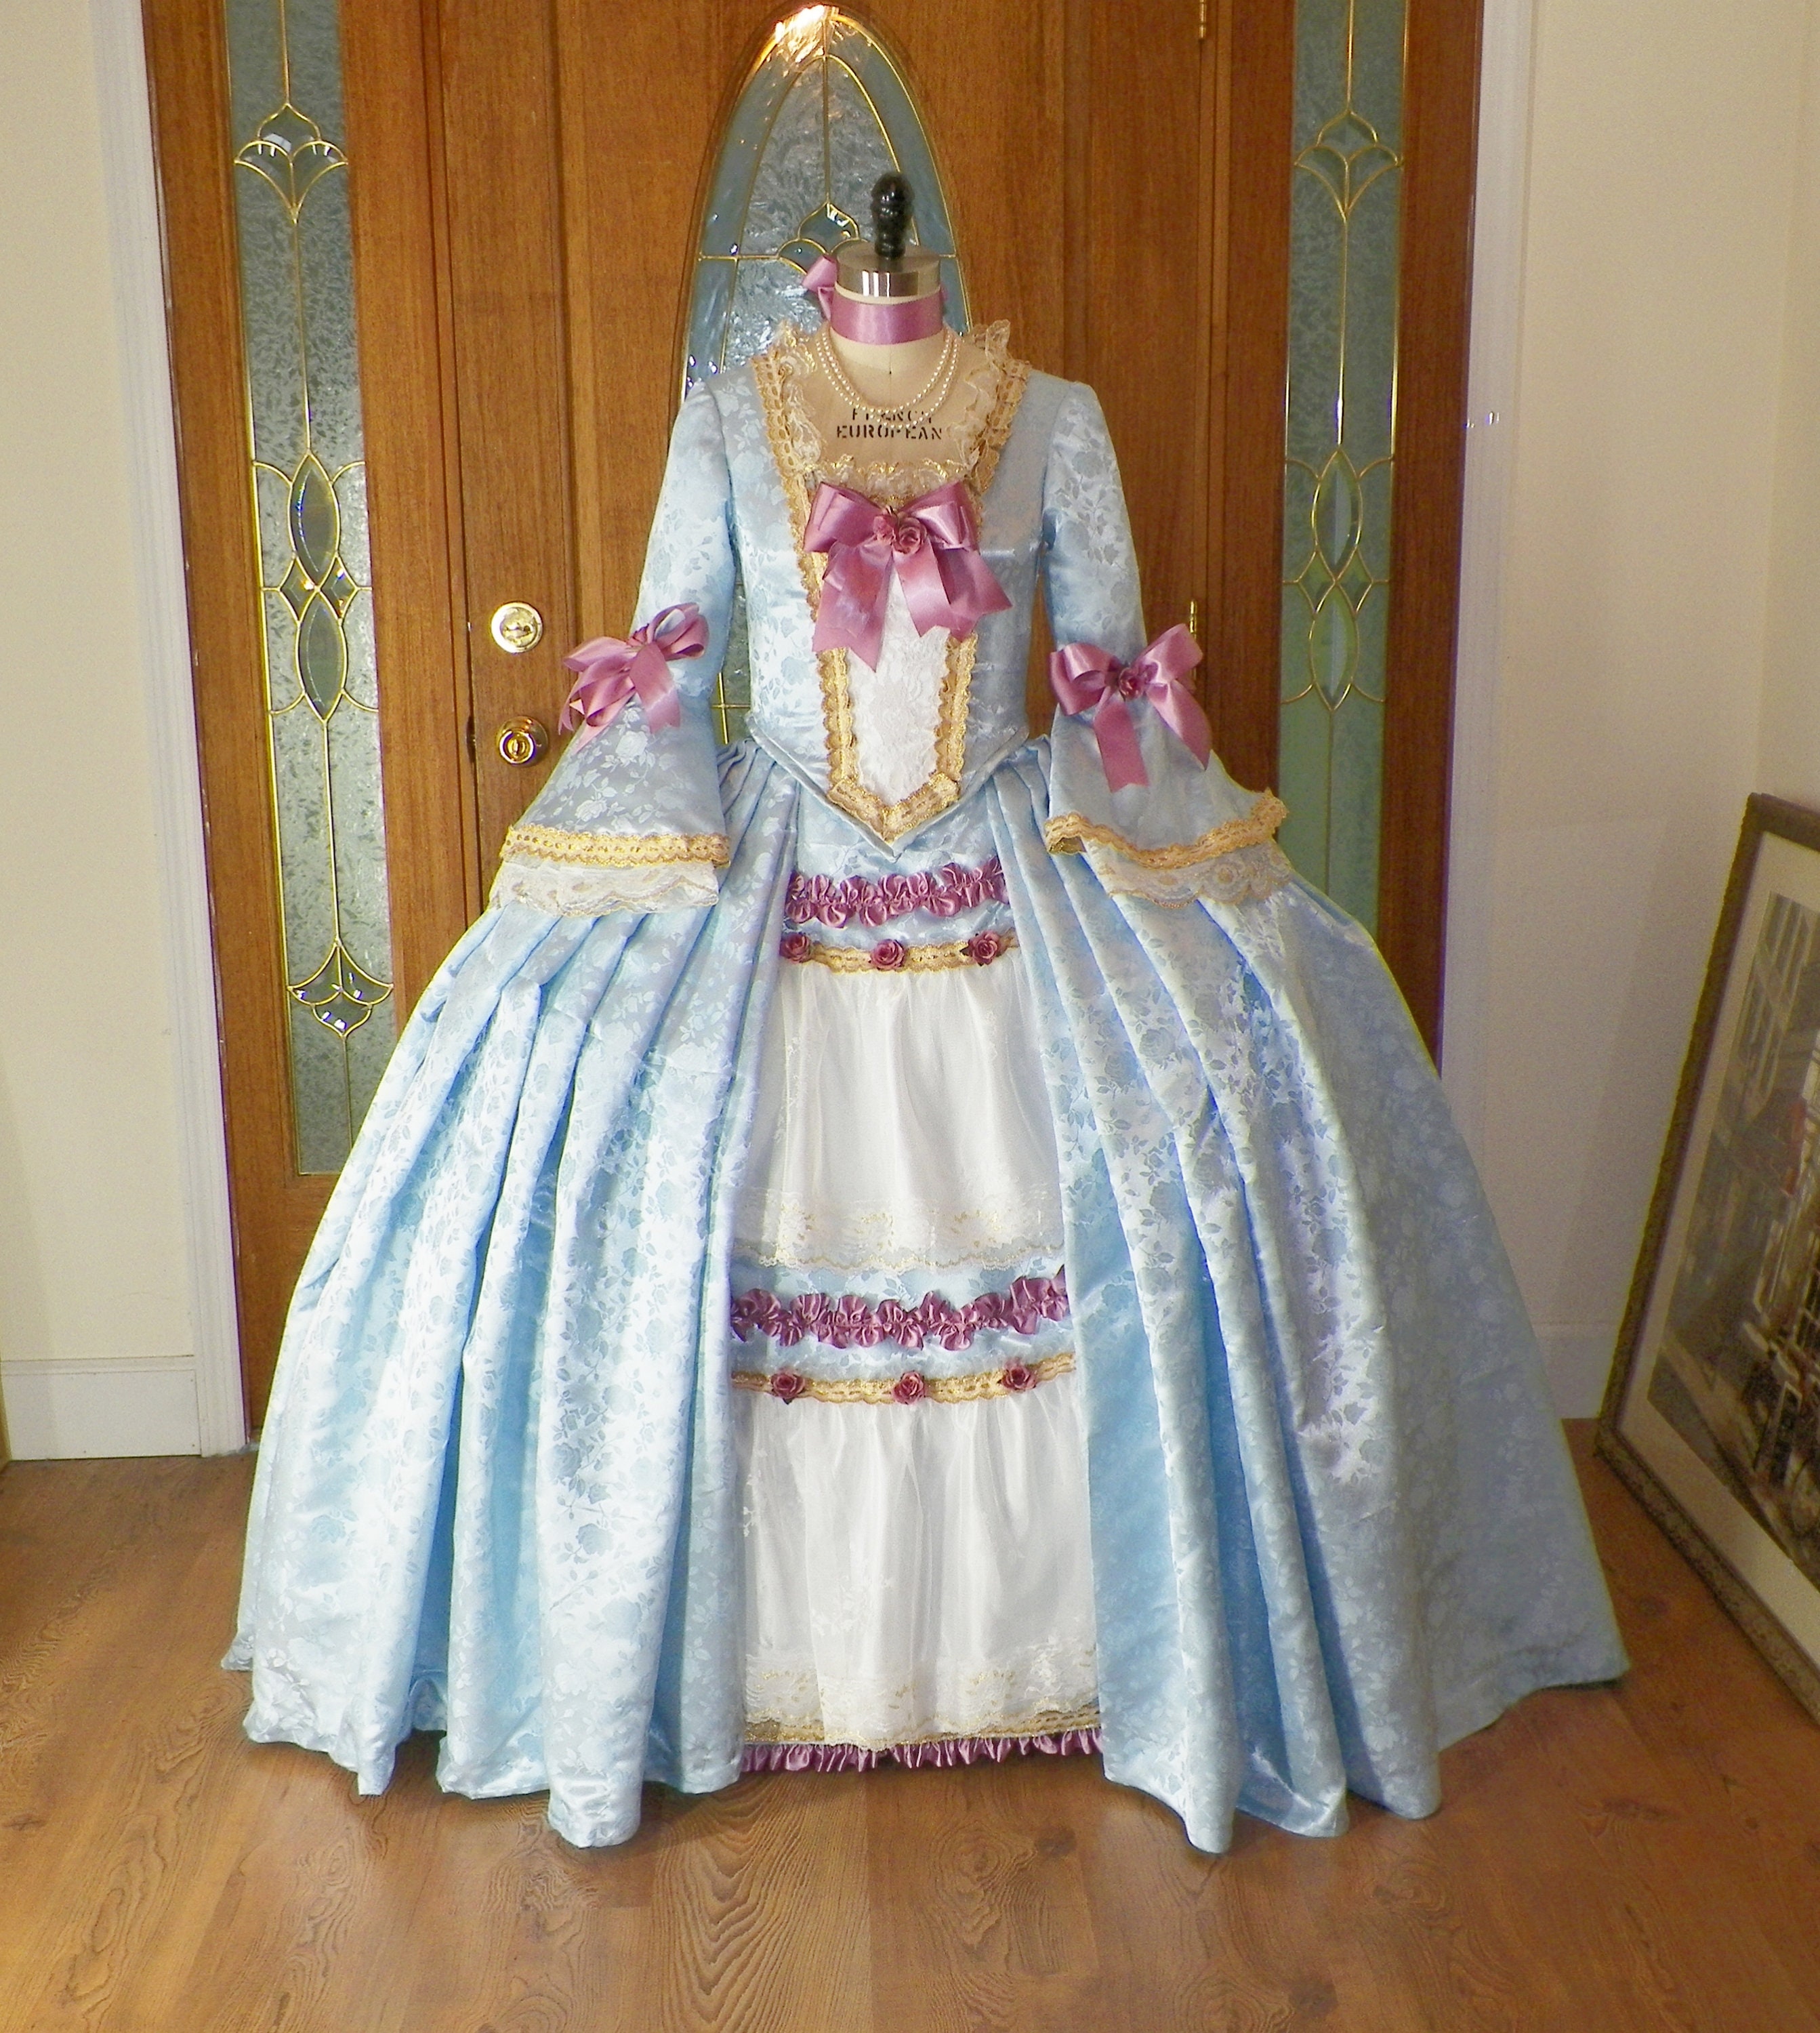  Corset Dress for Women Women Marie Antoinette Costume